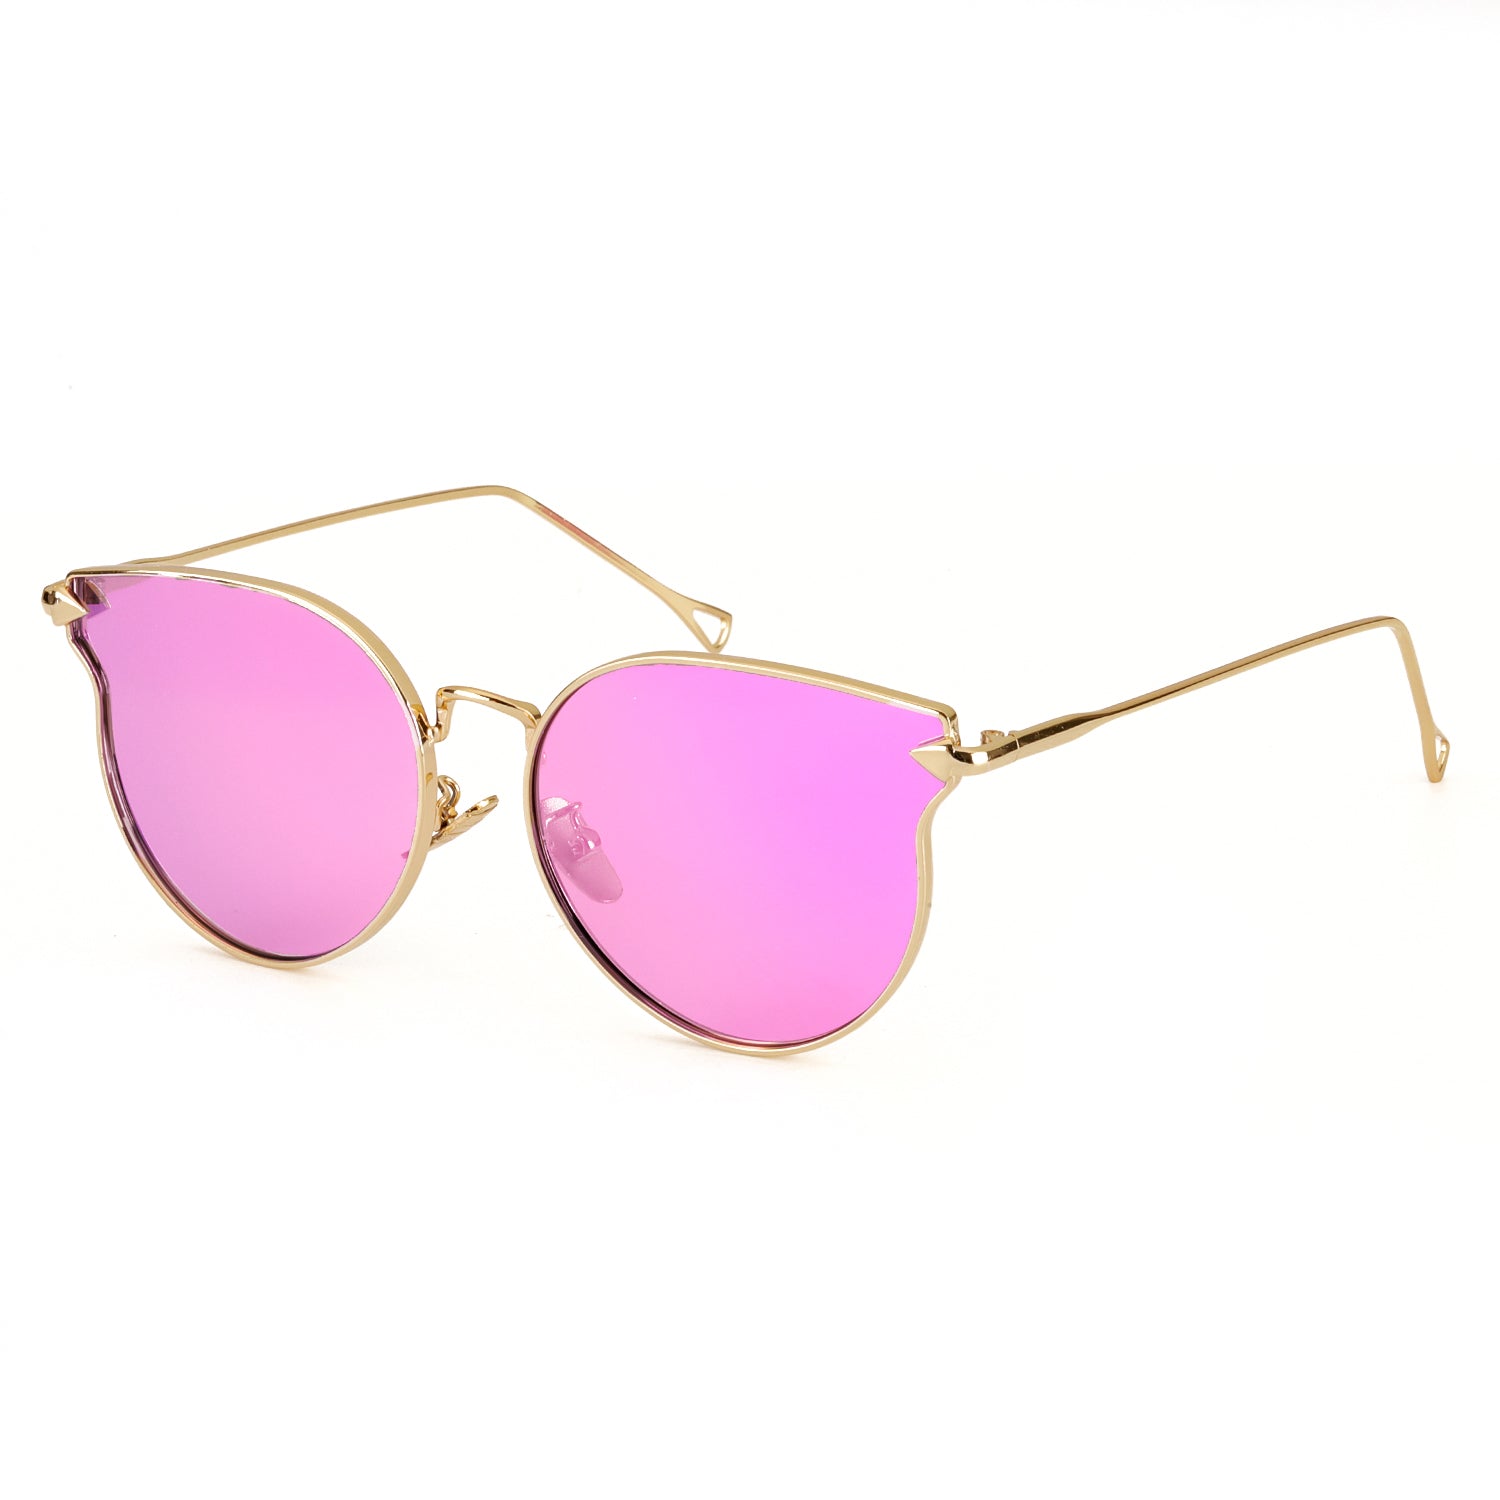 LVIOE Cat Eye Mirrored Lenses Ultra Thin Light Metal Frame Women Sunglasses - LVIOE